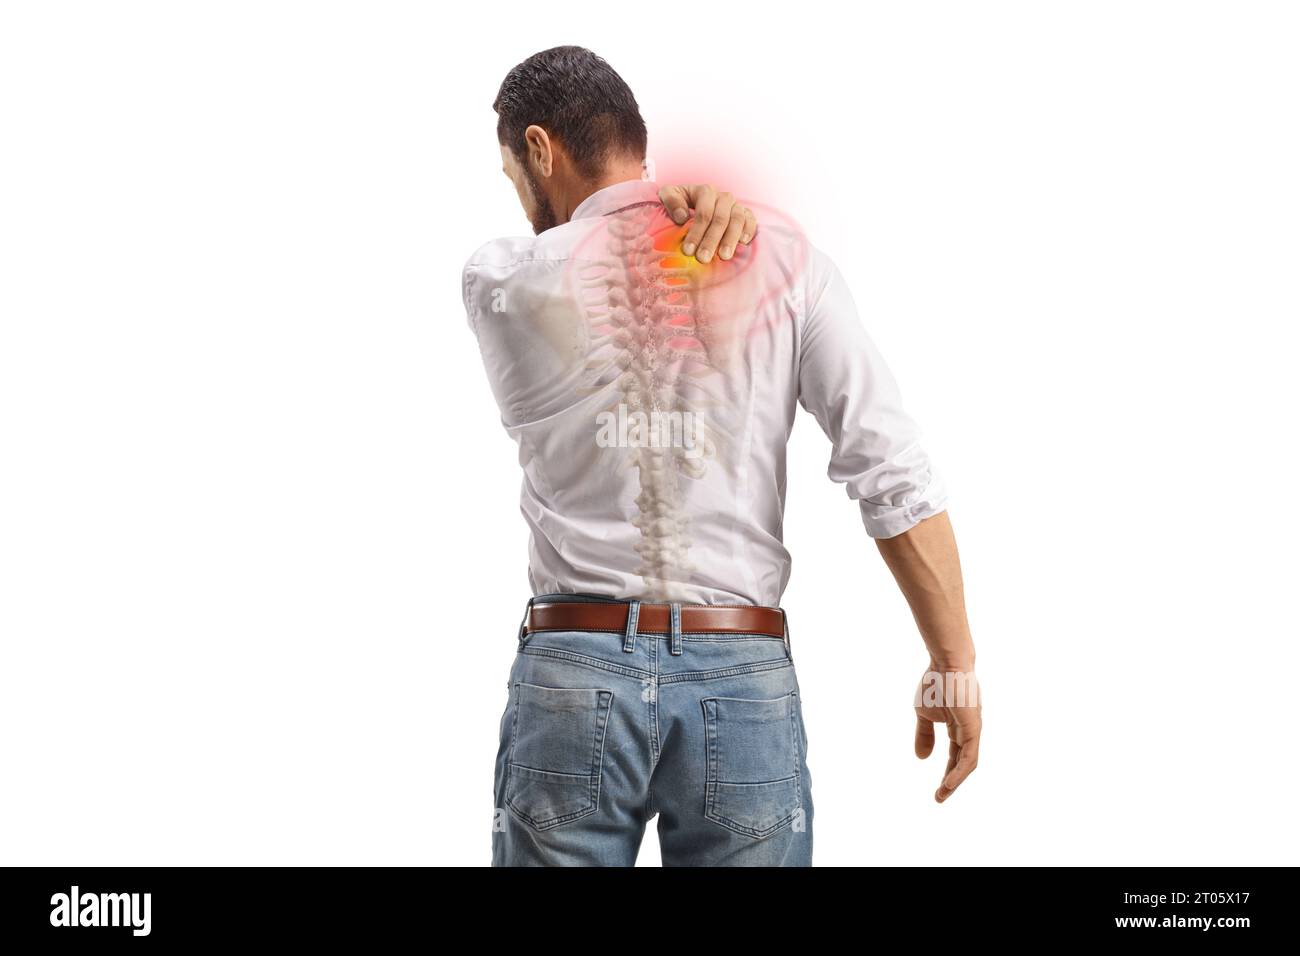 Rückansicht eines Mannes mit Schmerzen im oberen Rücken, der einen roten Punkt auf weißem Hintergrund hält Stockfoto